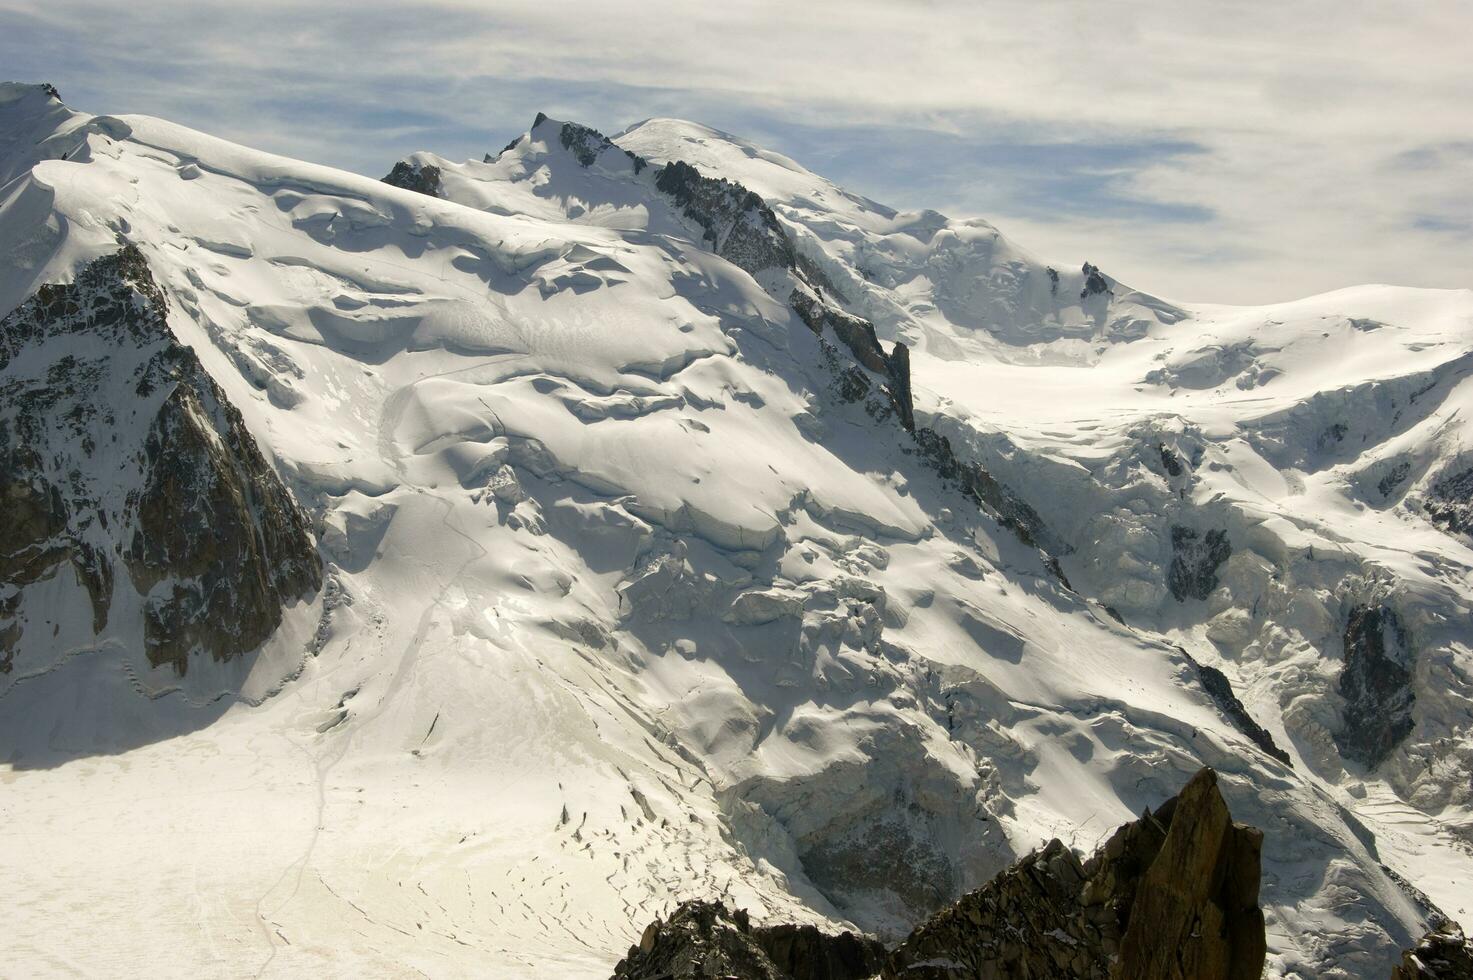 dos personas son excursionismo arriba un montaña con nieve cubierto montañas foto